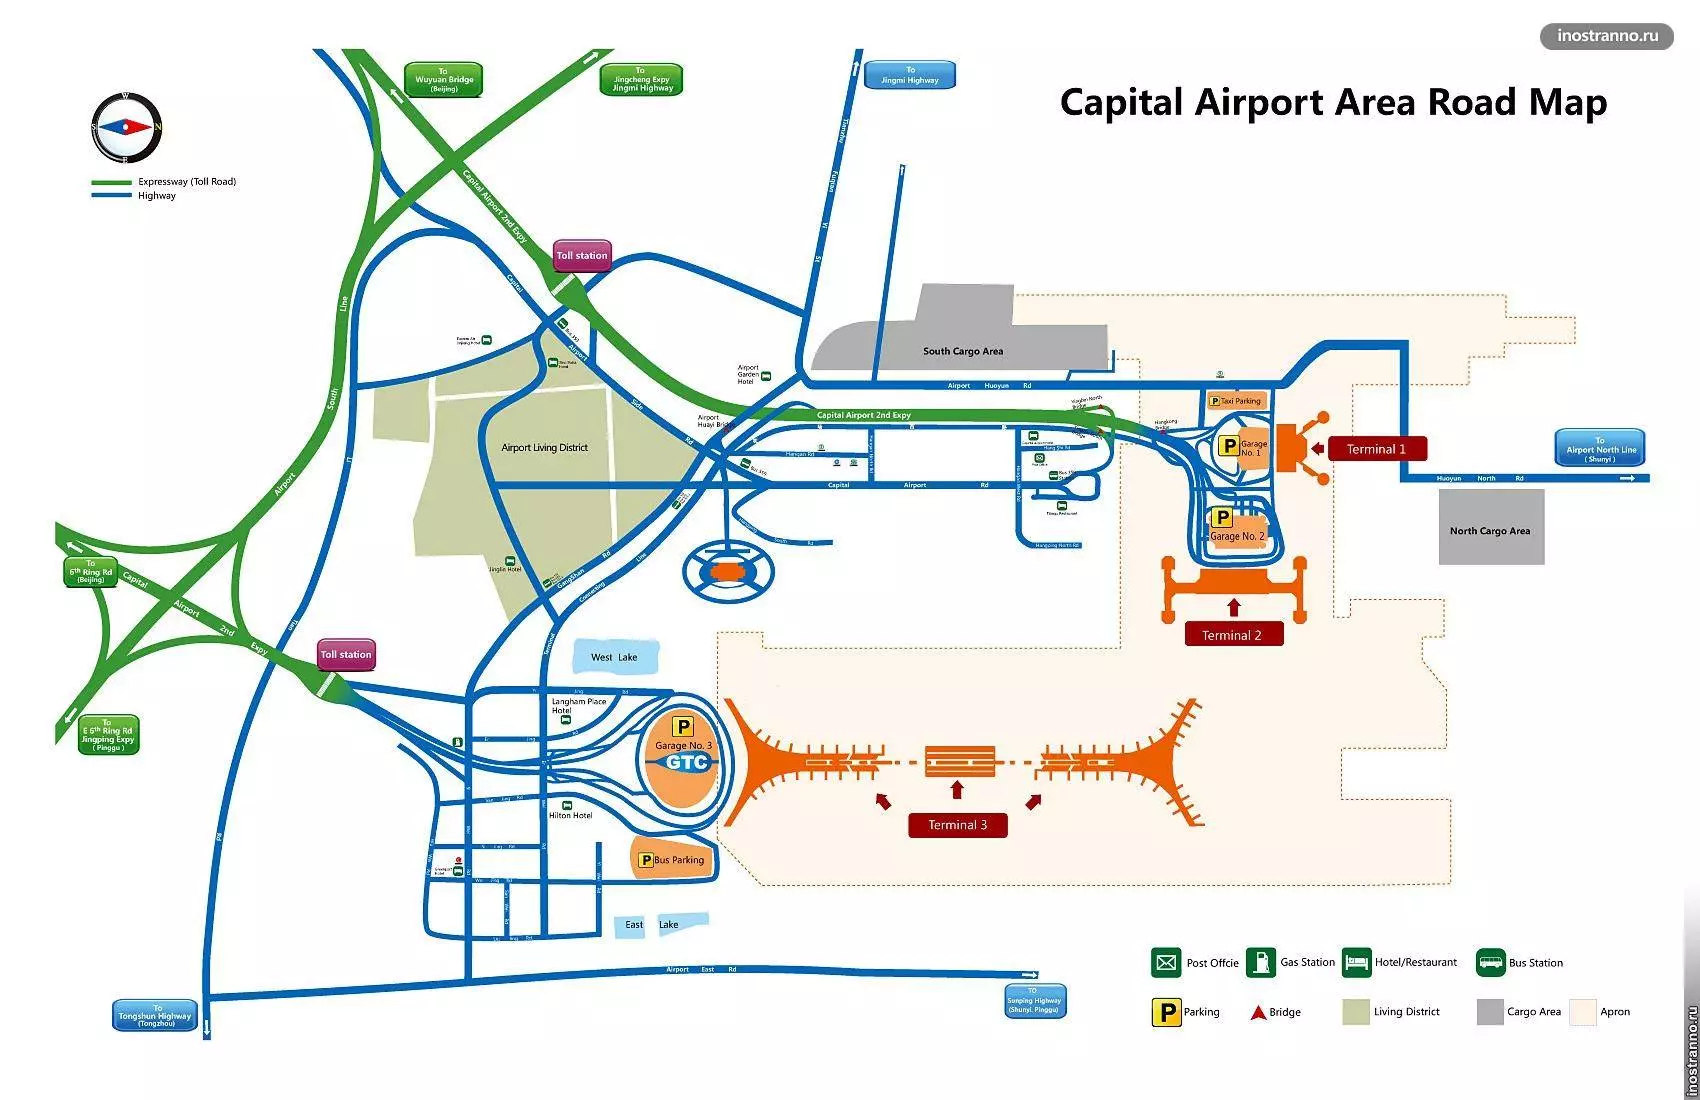 Международный аэропорт пекина - кэпитал (шоуду): советы туристам